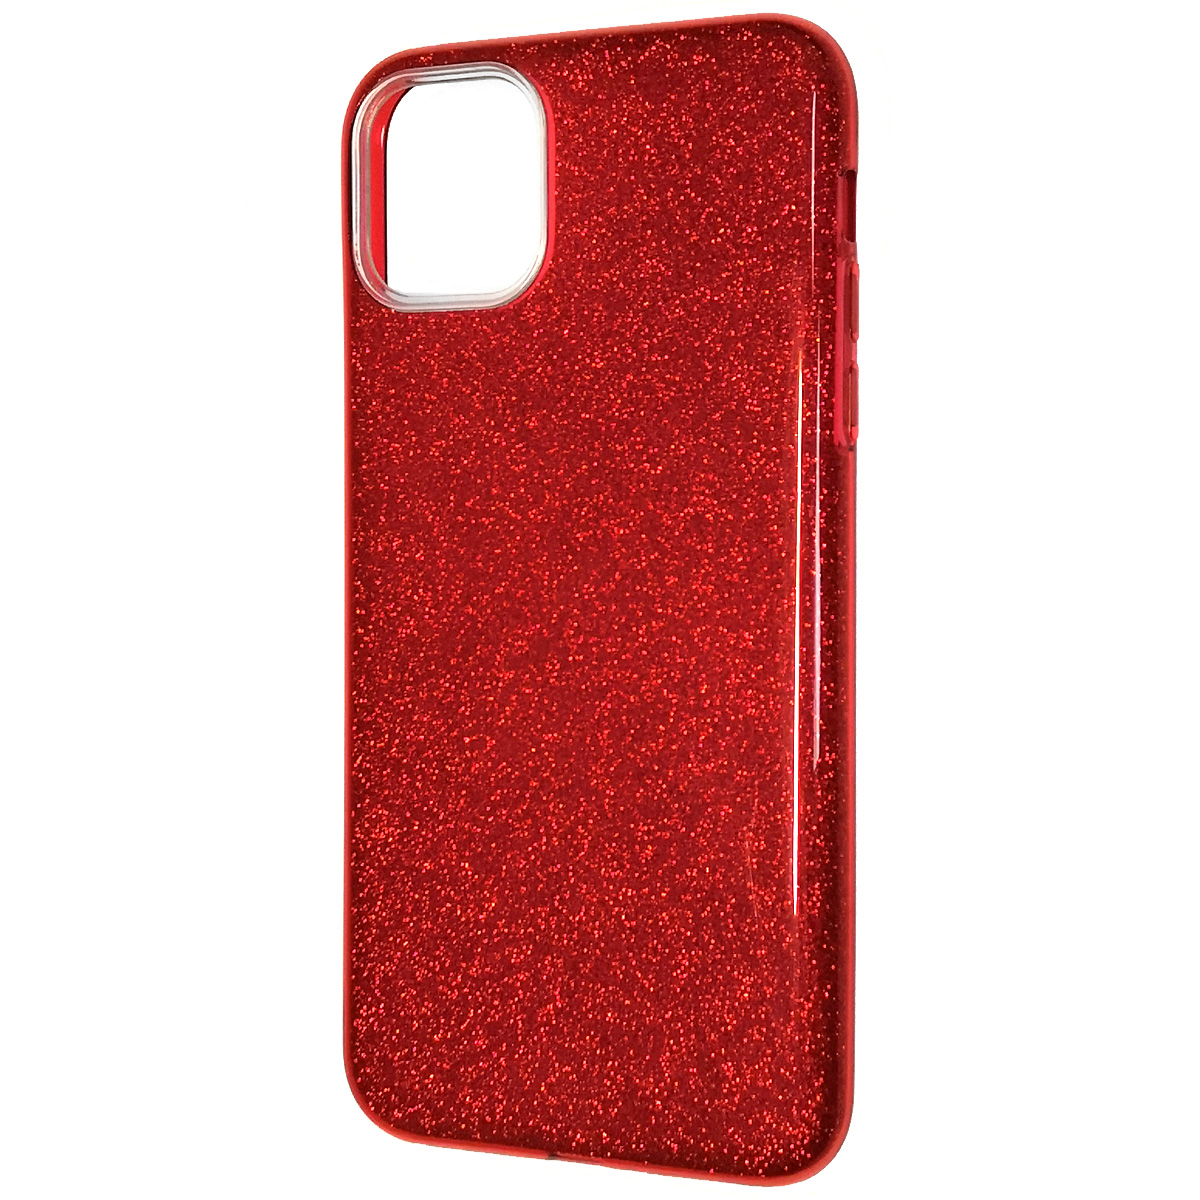 Чехол накладка Shine для APPLE iPhone 11 Pro Max 2019, силикон, блестки, цвет красный.